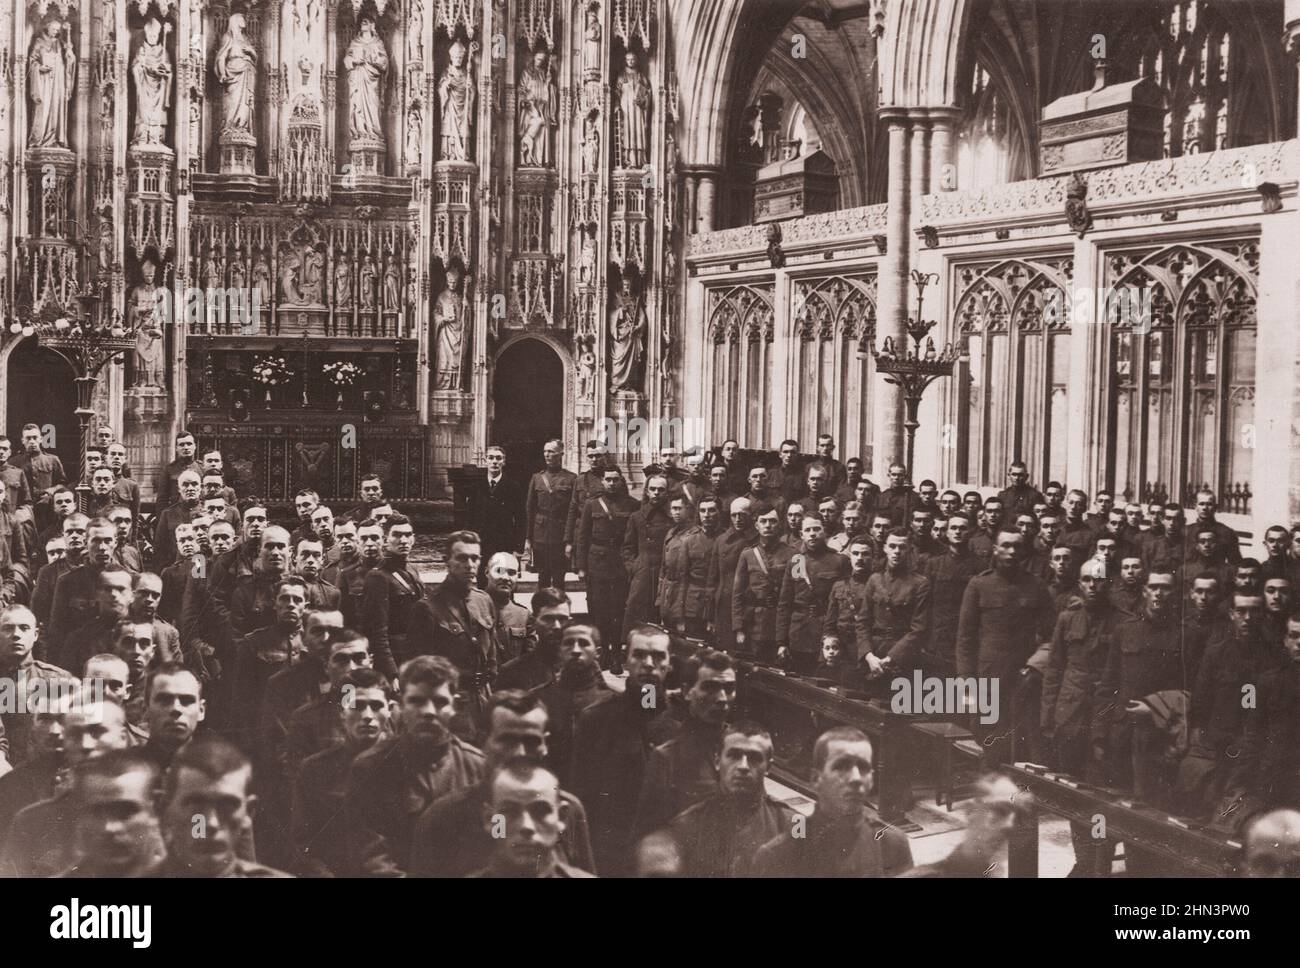 Vintage-Foto von amerikanischen Soldaten in der Kathedrale in Winchester, England, dem Tag, an dem der Waffenstillstand unterzeichnet wurde. Großbritannien. 11.11.1918 Stockfoto